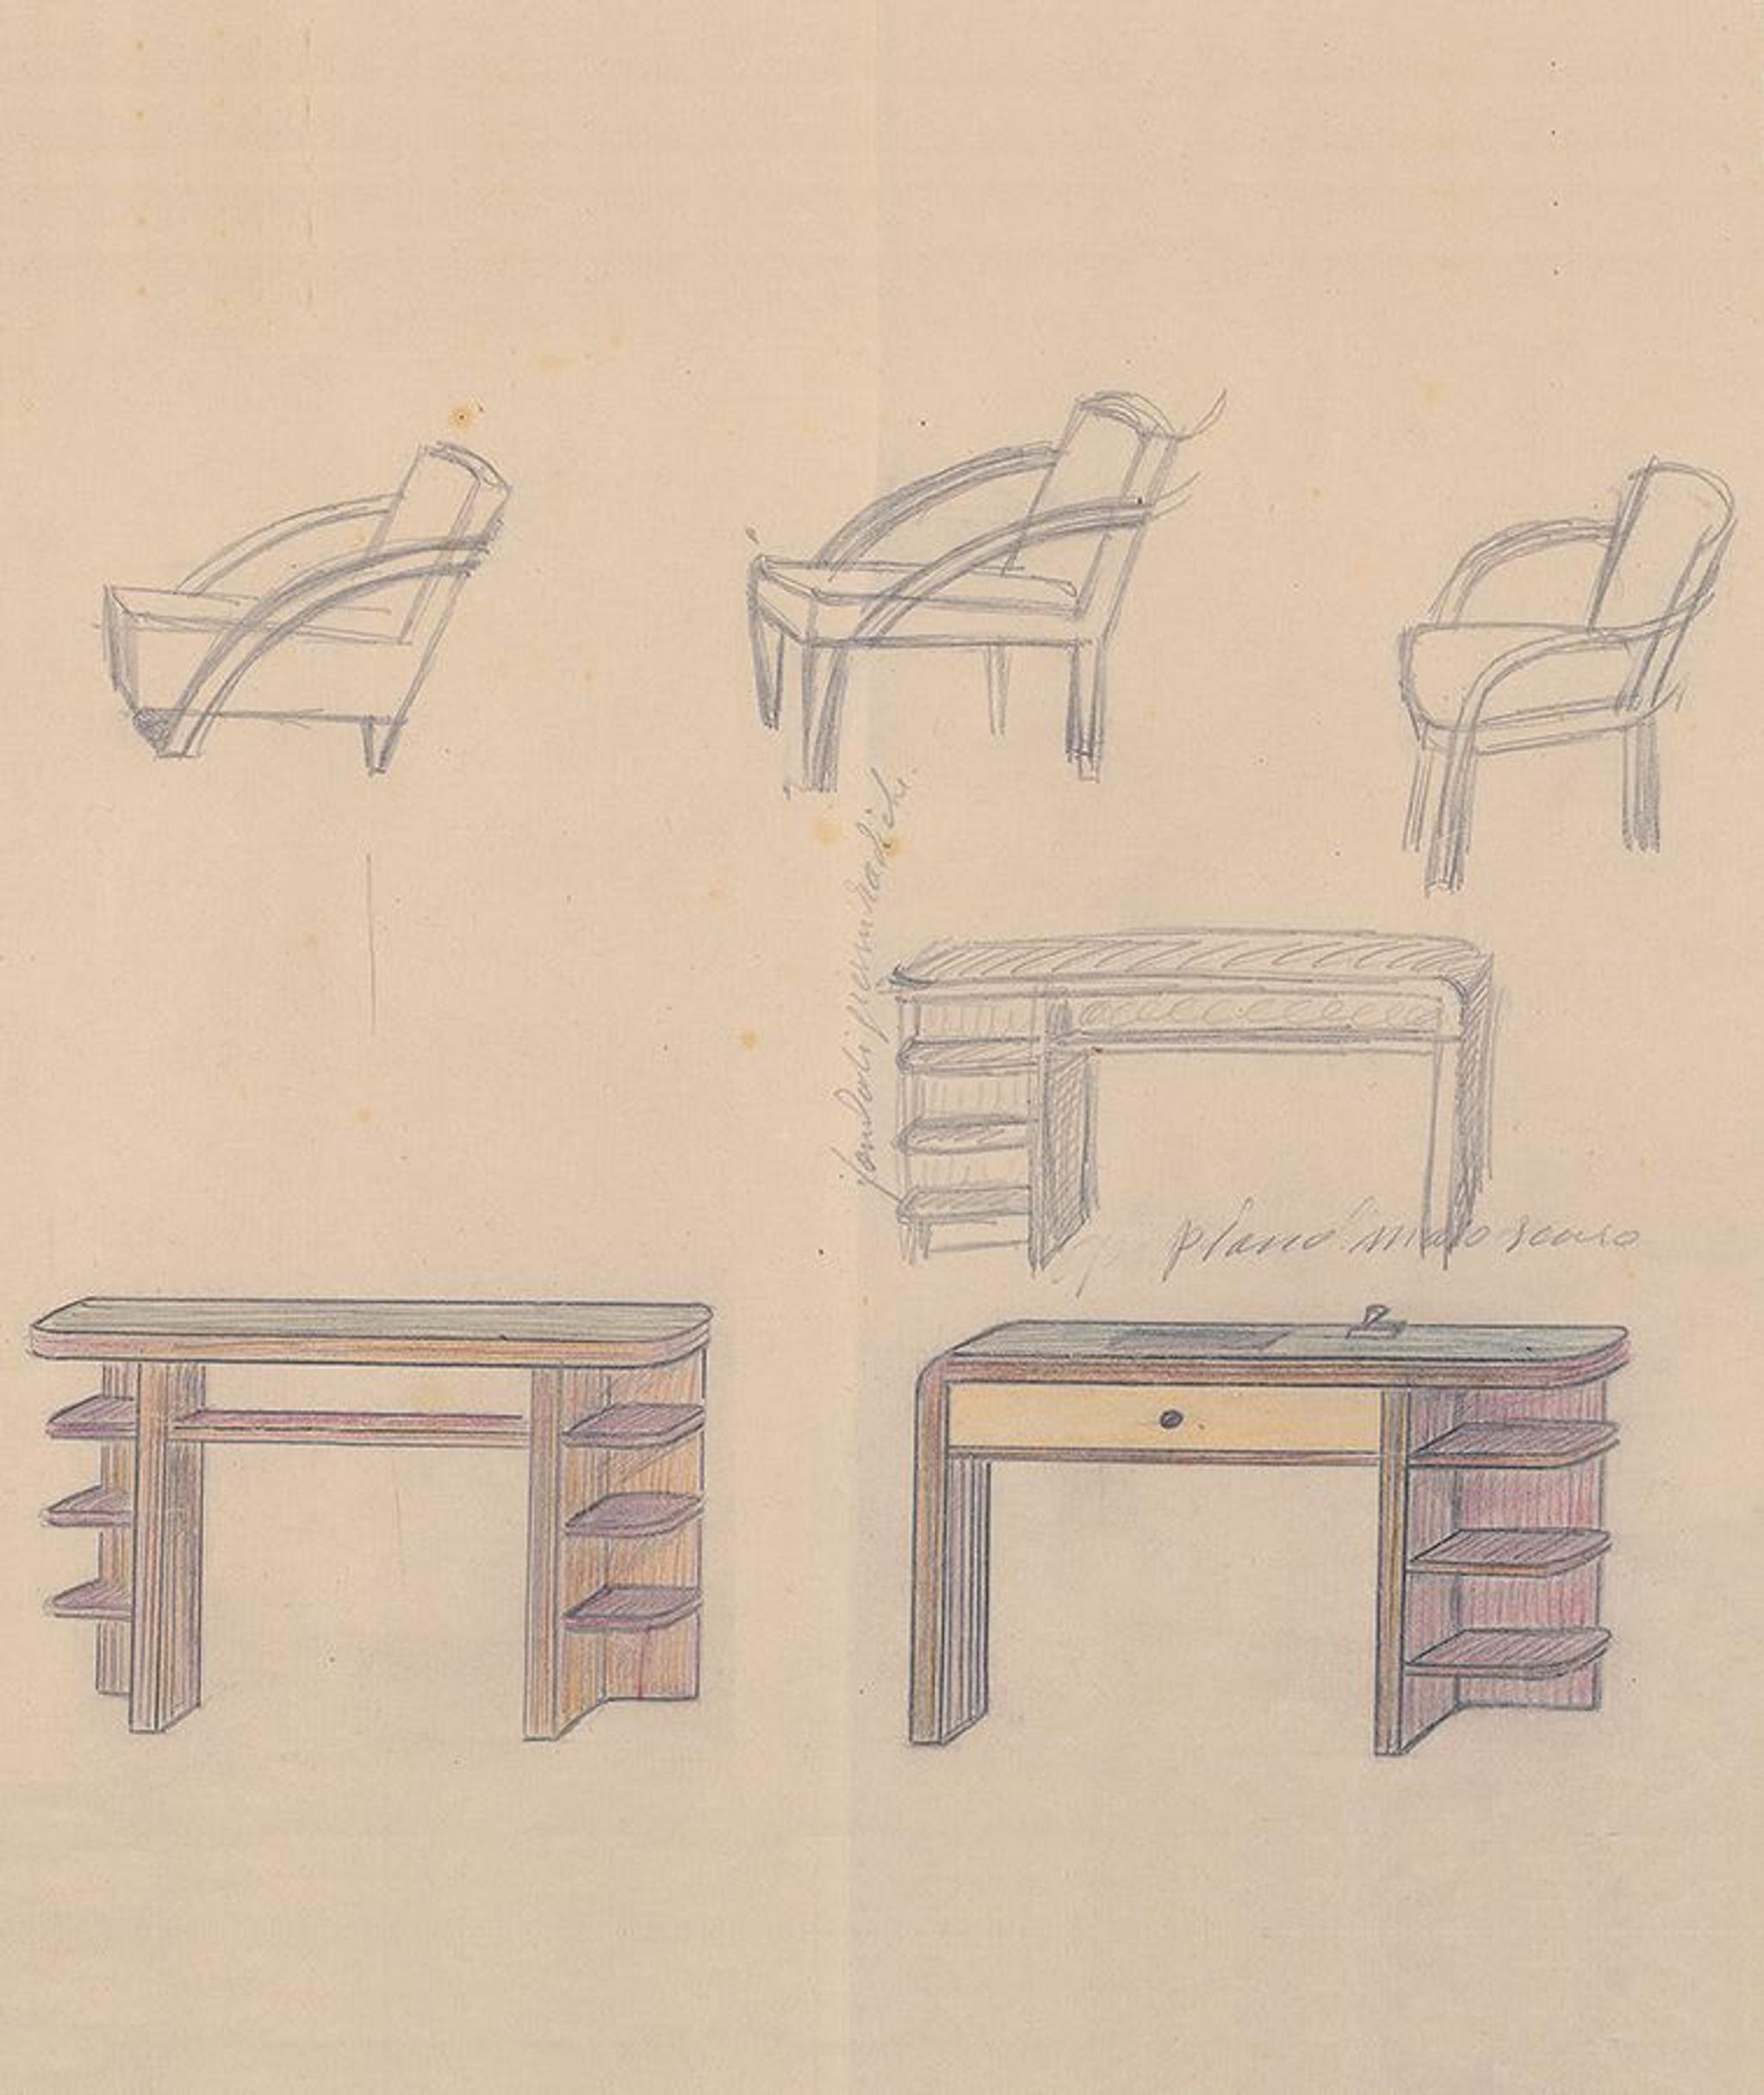 Skizze für gemischte Möbel von Antonio Berdondini